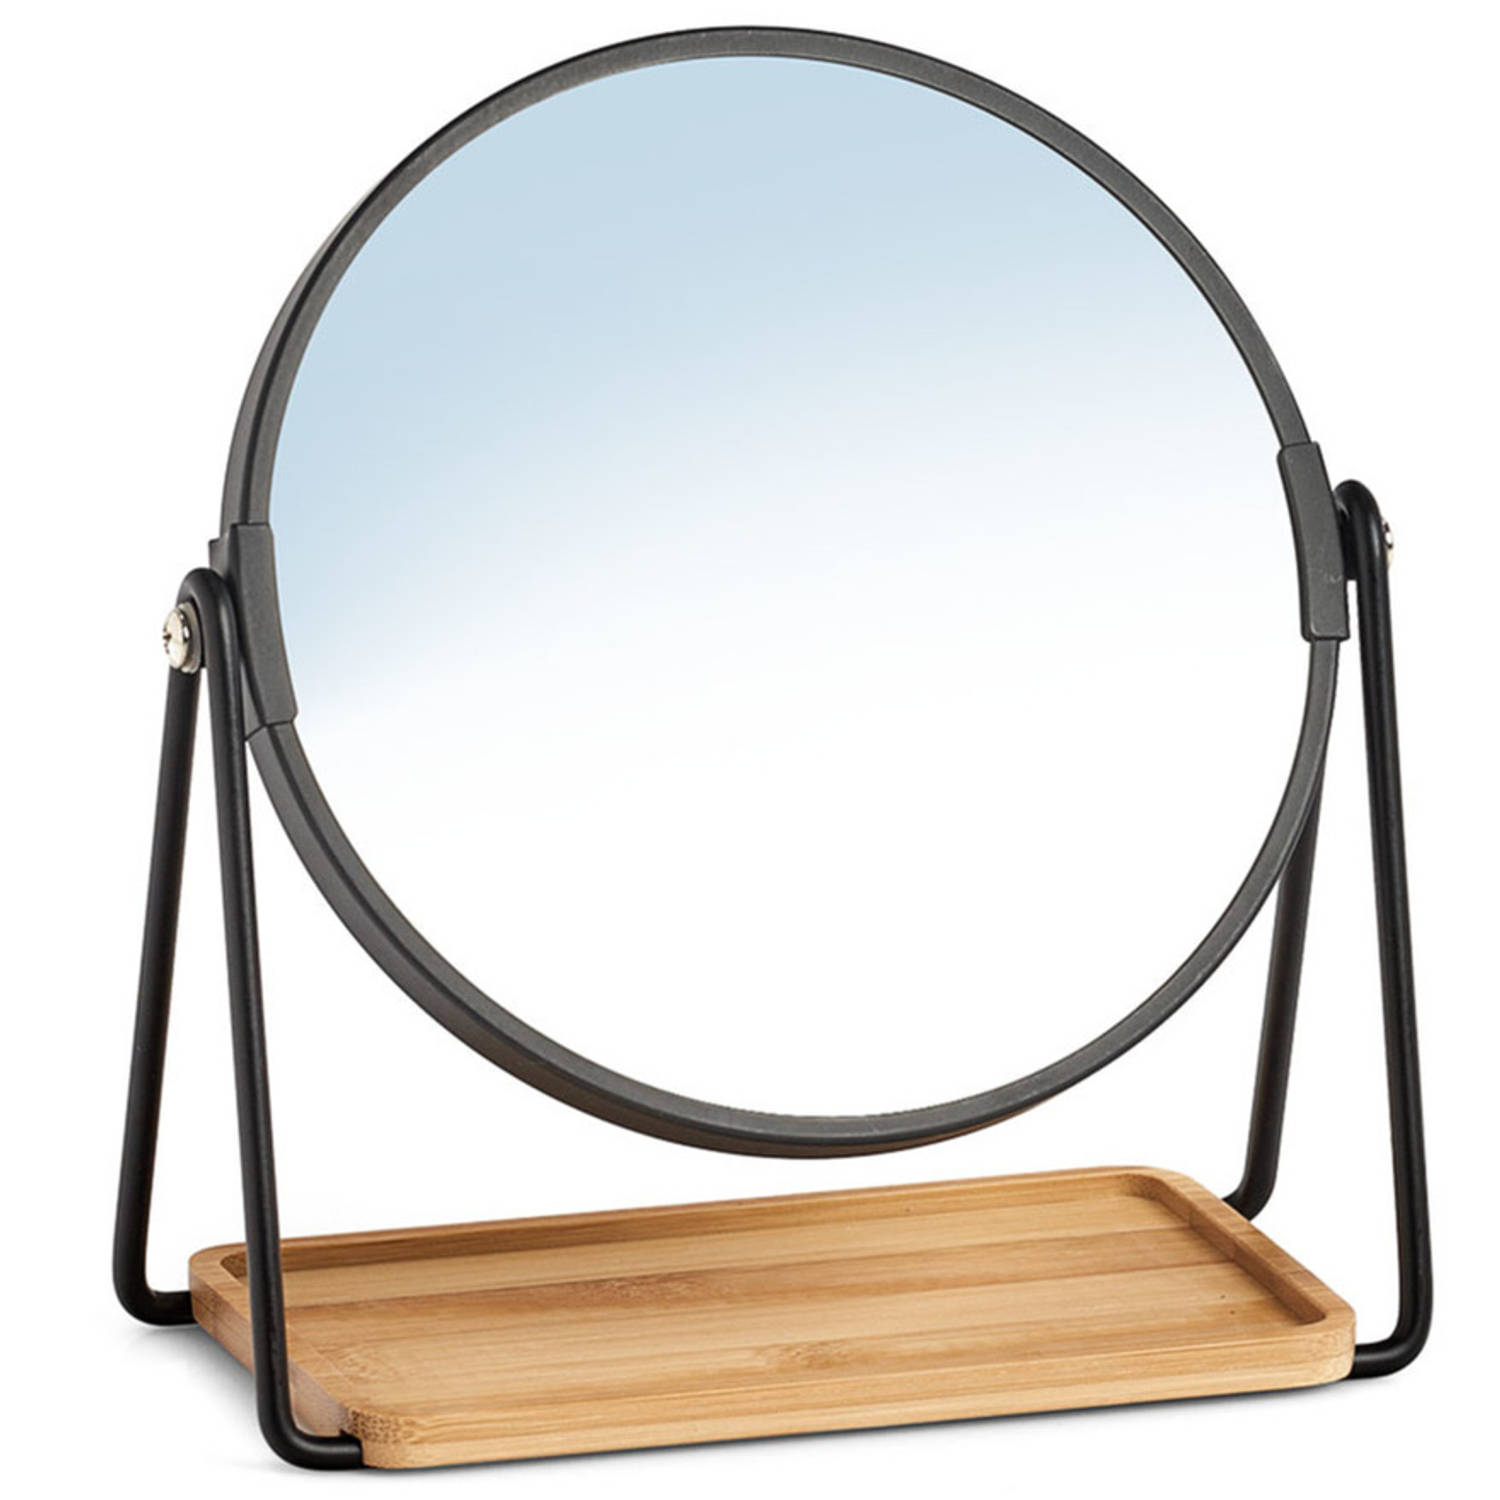 Zeller Make-up spiegel metaal bamboe 17 5 x 20 5 cm Make-up spiegeltjes